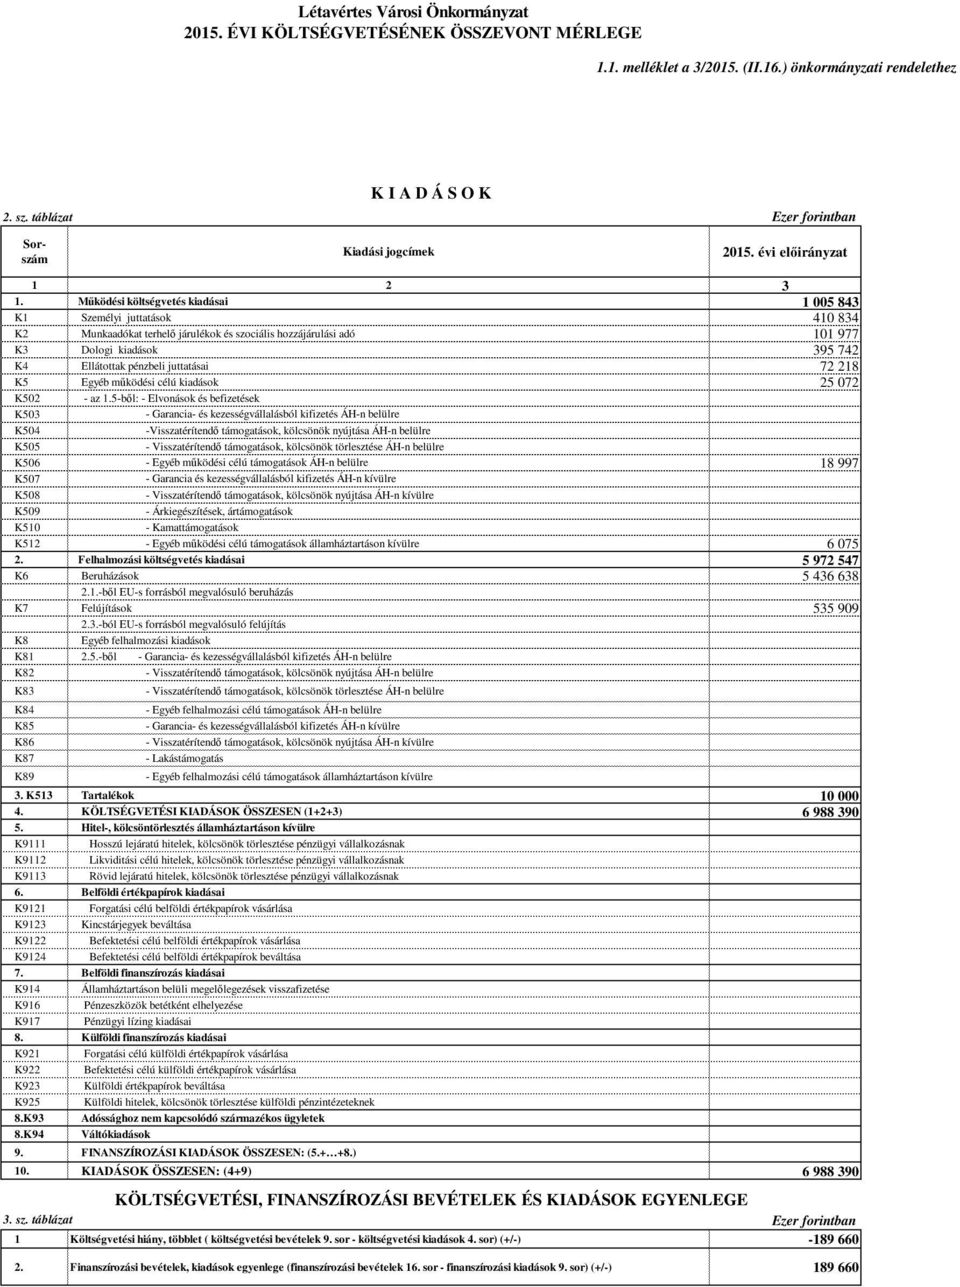 Működési költségvetés kiadásai 1 005 843 K1 Személyi juttatások 410 834 K2 Munkaadókat terhelő járulékok és szociális hozzájárulási adó 101 977 K3 Dologi kiadások 395 742 K4 Ellátottak pénzbeli